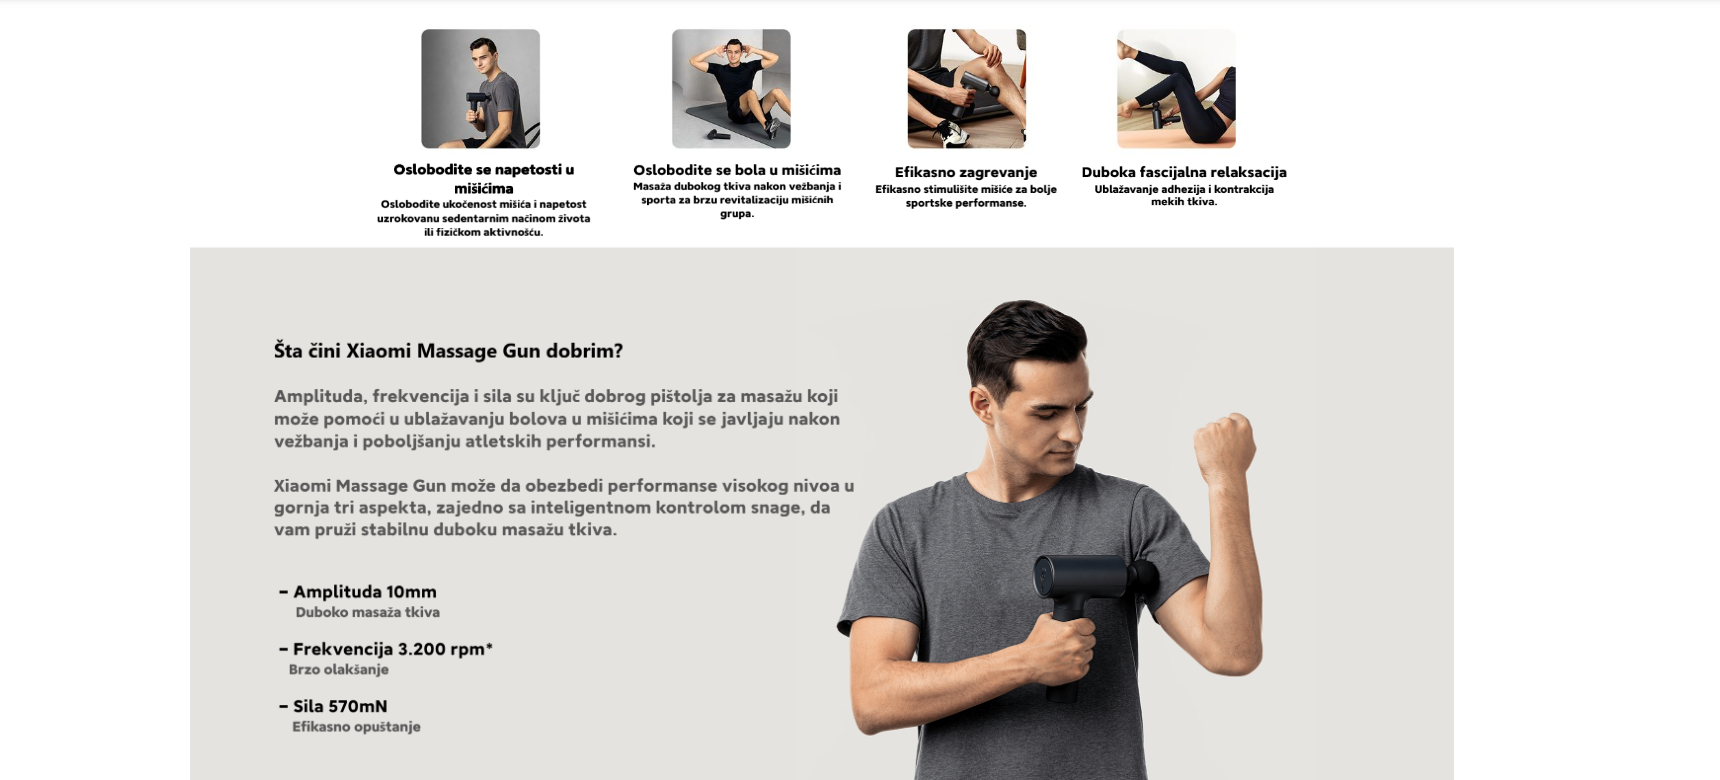 Xiaomi masažni pištolj za opuštanje mišića